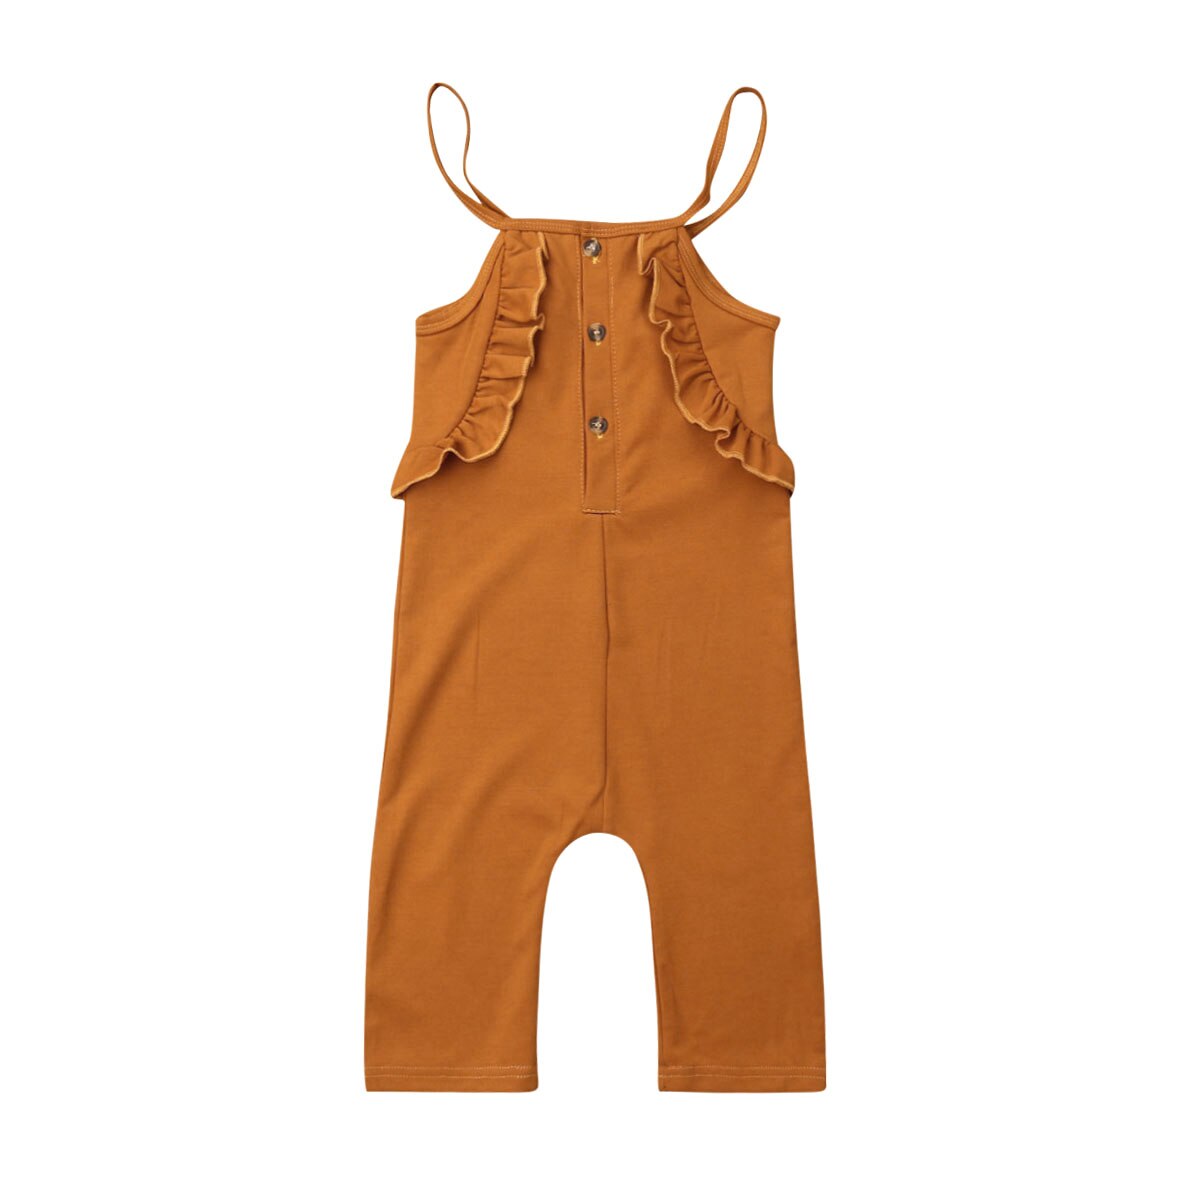 Toddler børn baby pige sommer tøj flæse romper jumpsuit overalls tøj roupa infantil tøj kostume vestidos